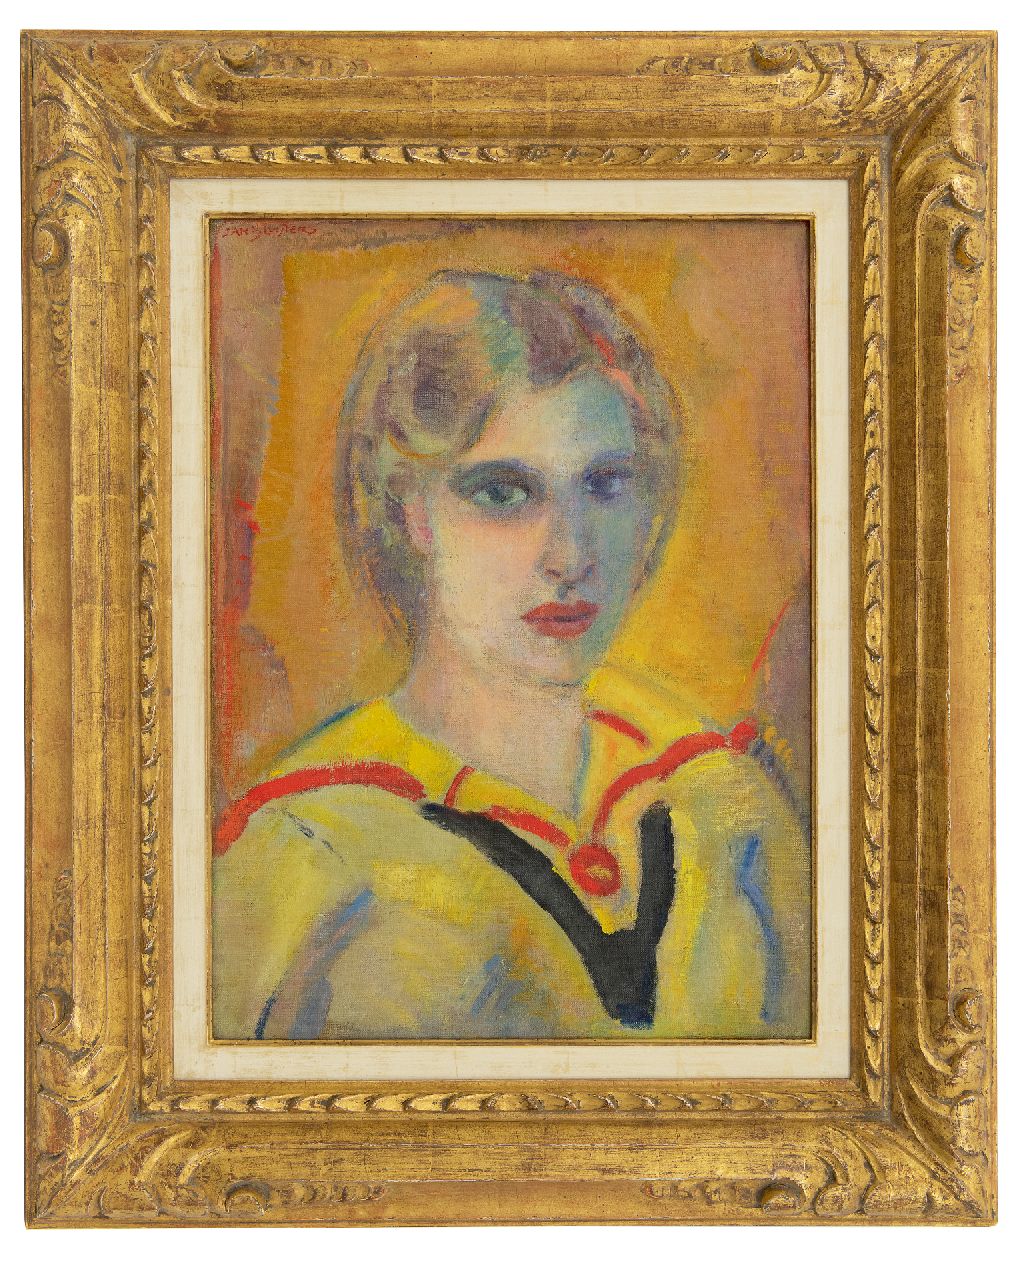 Sluijters J.C.B.  | Johannes Carolus Bernardus 'Jan' Sluijters | Schilderijen te koop aangeboden | Vrouw in gele blouse, olieverf op doek 57,4 x 42,0 cm, gesigneerd linksboven en te dateren ca. 1912